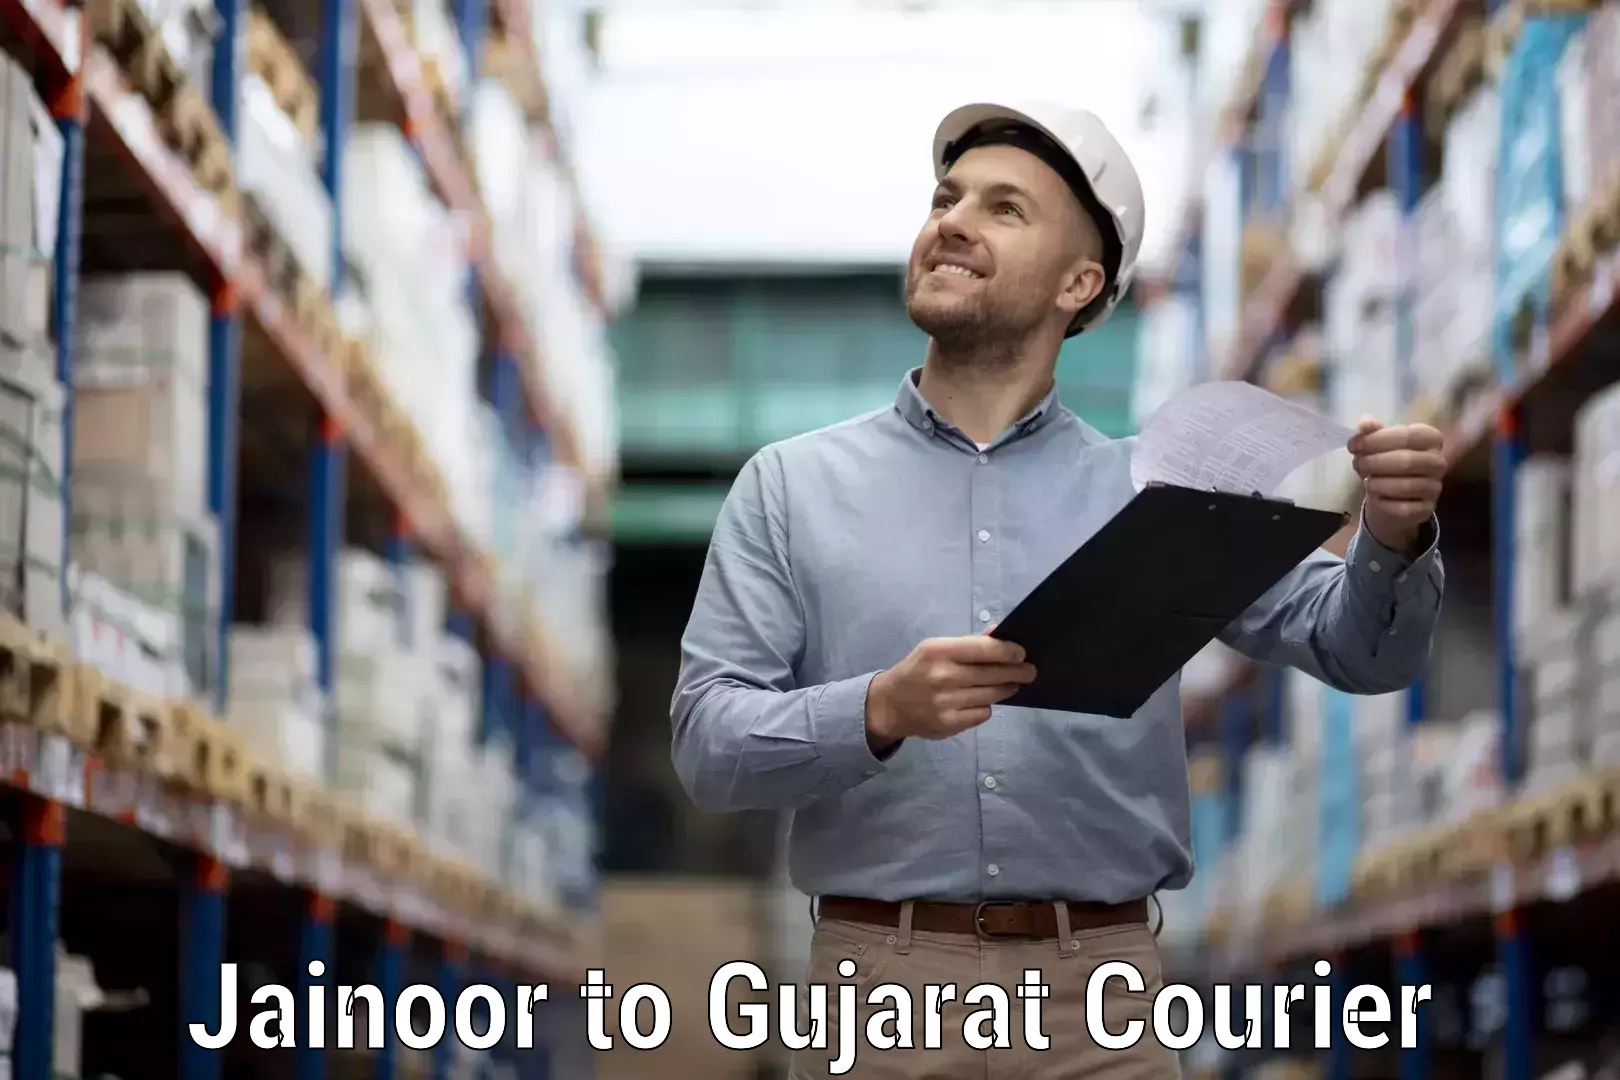 Cost-effective courier options Jainoor to Patan Gujarat